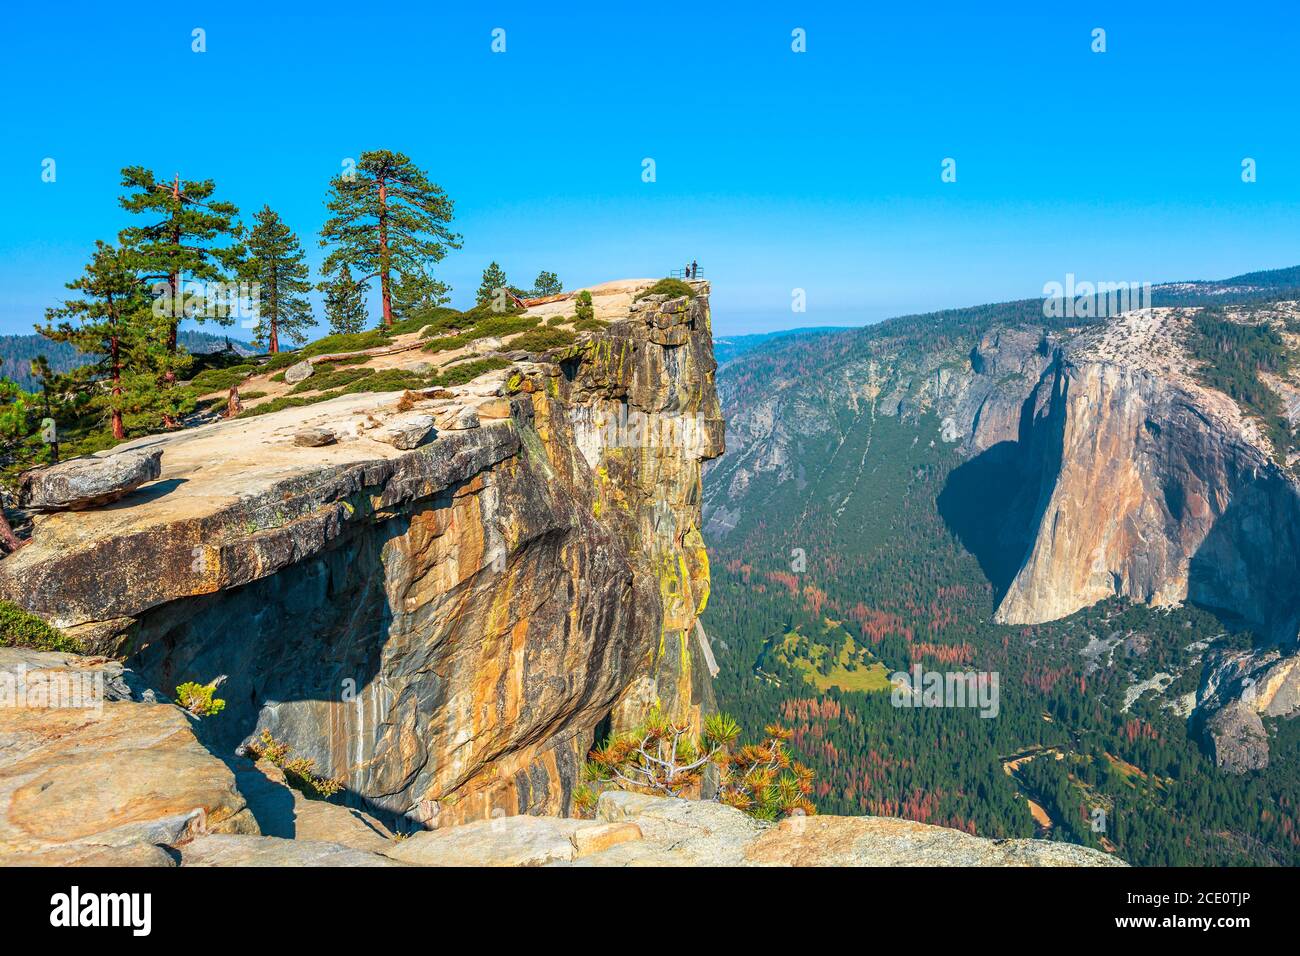 panorama à Taft point dans le parc national de Yosemite, Californie, États-Unis. Vue depuis Taft point : Yosemite Valley, El Capitan et Yosemite Falls. Banque D'Images